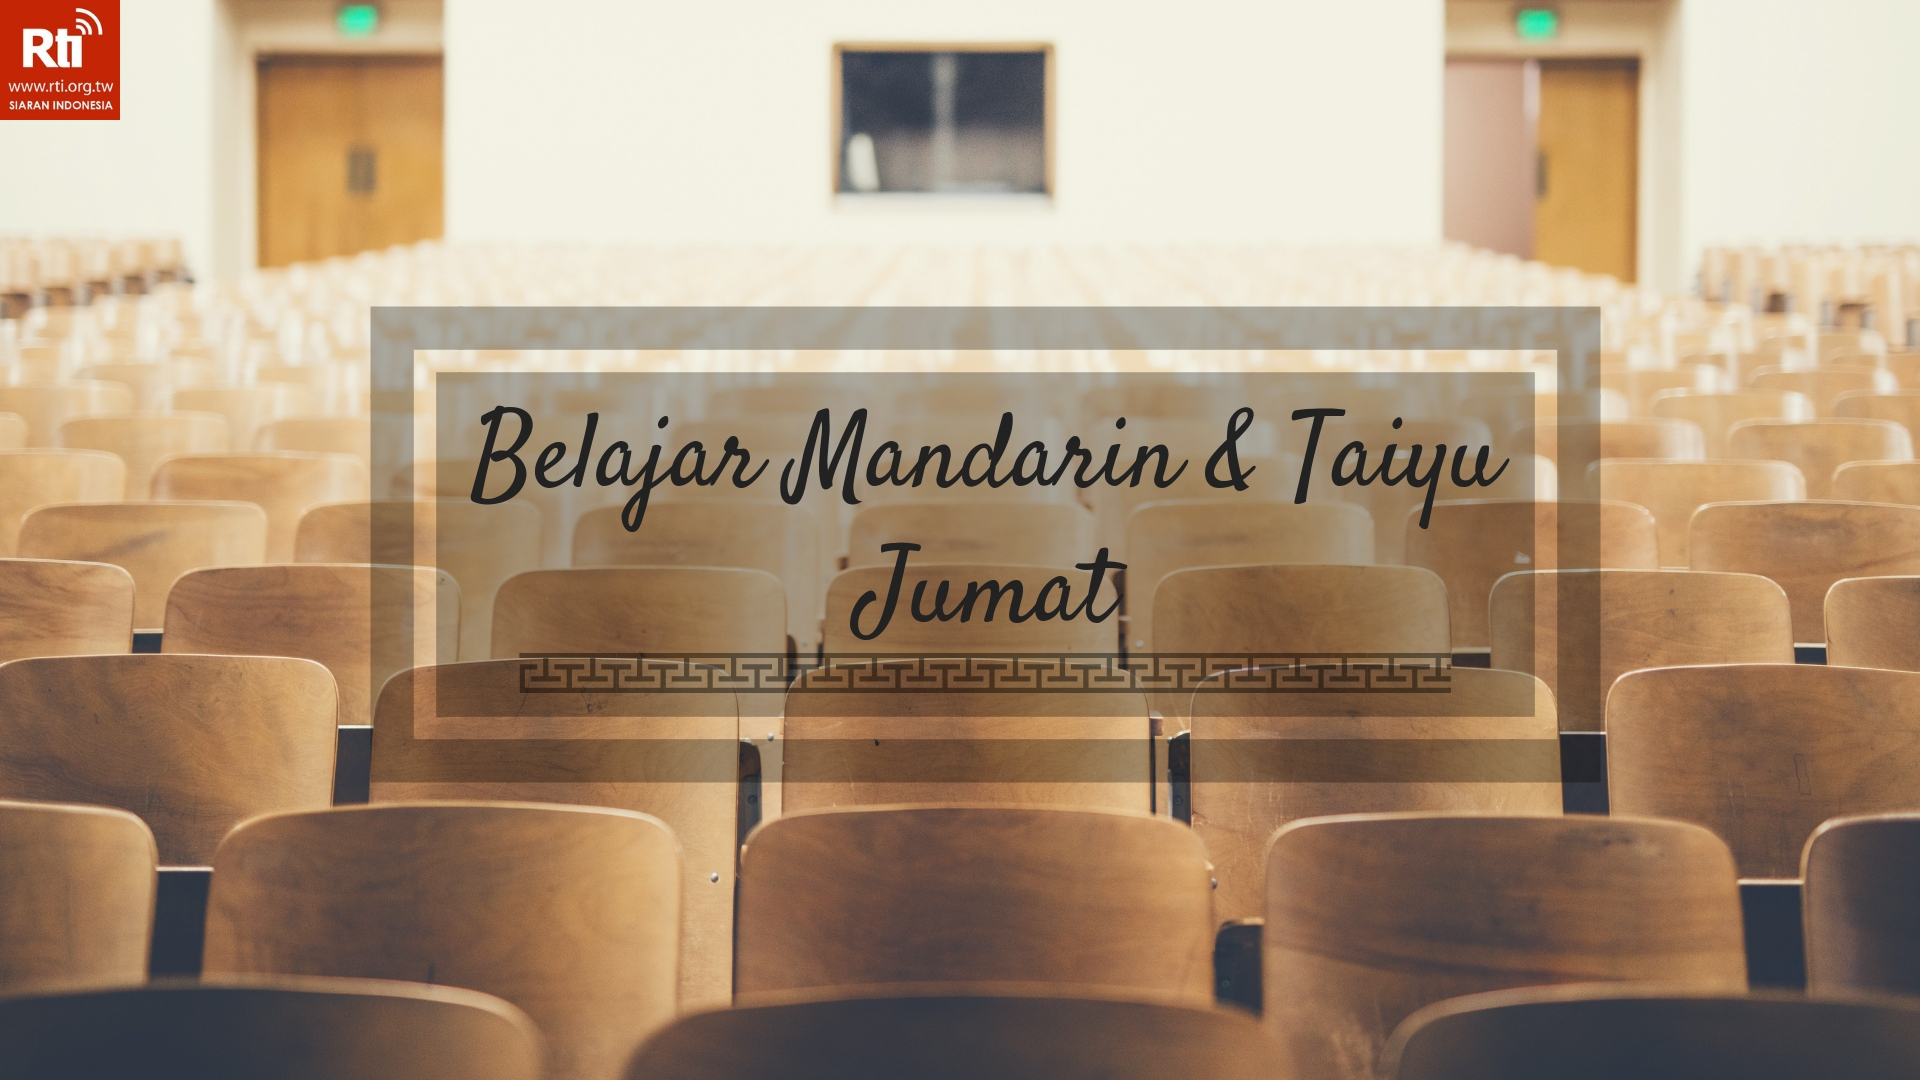 Belajar Mandarin taiyu dan Bahasa Indonesia 自己sendiri